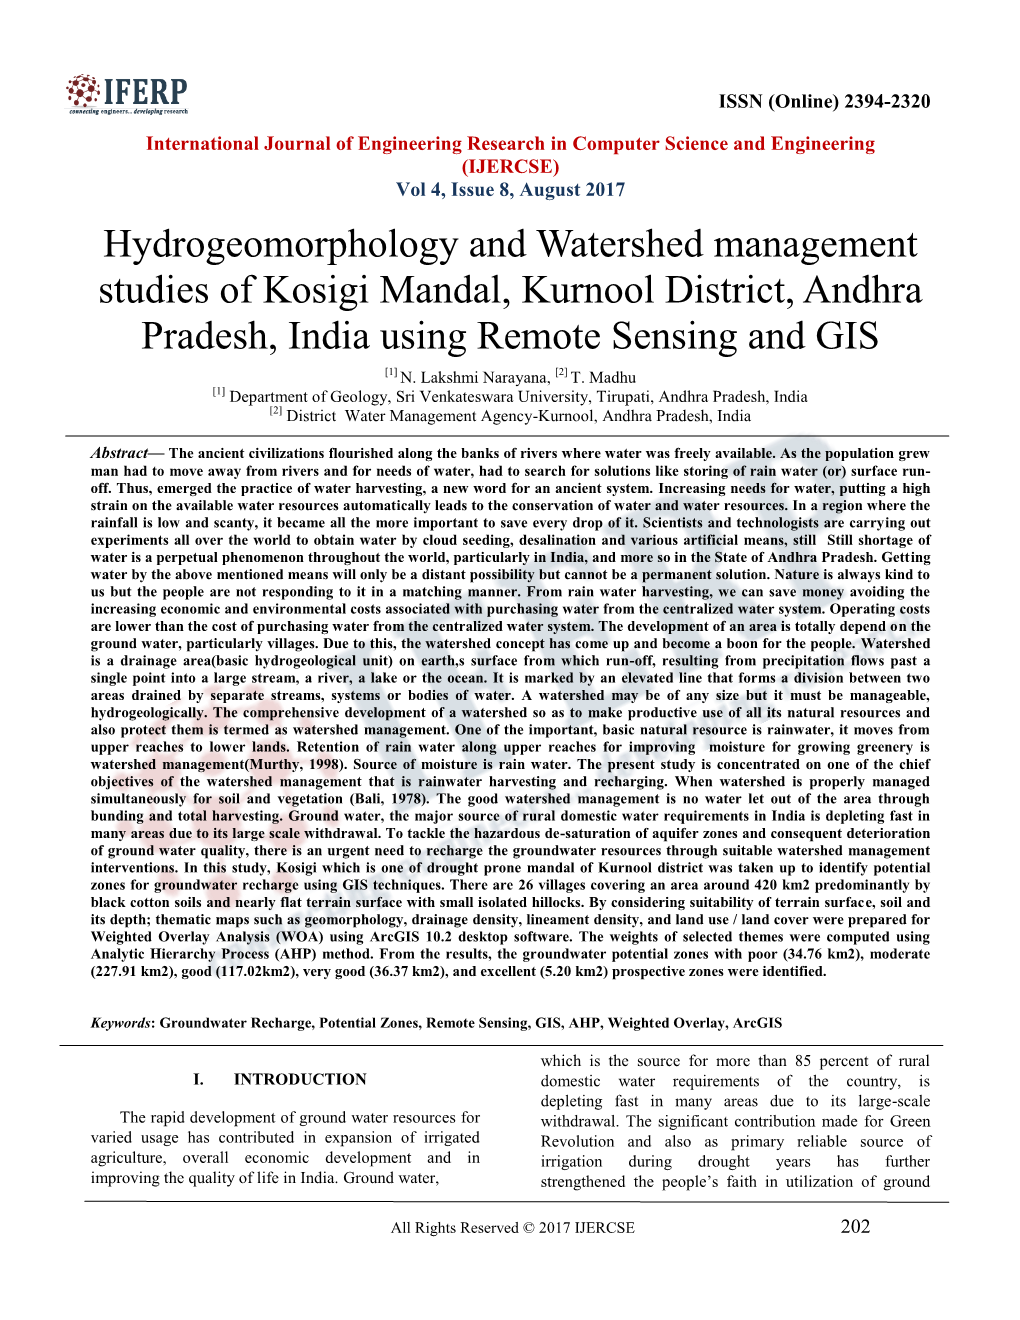 Hydrogeomorphology and Watershed Management Studies of Kosigi Mandal, Kurnool District, Andhra Pradesh, India Using Remote Sensing and GIS [1] N